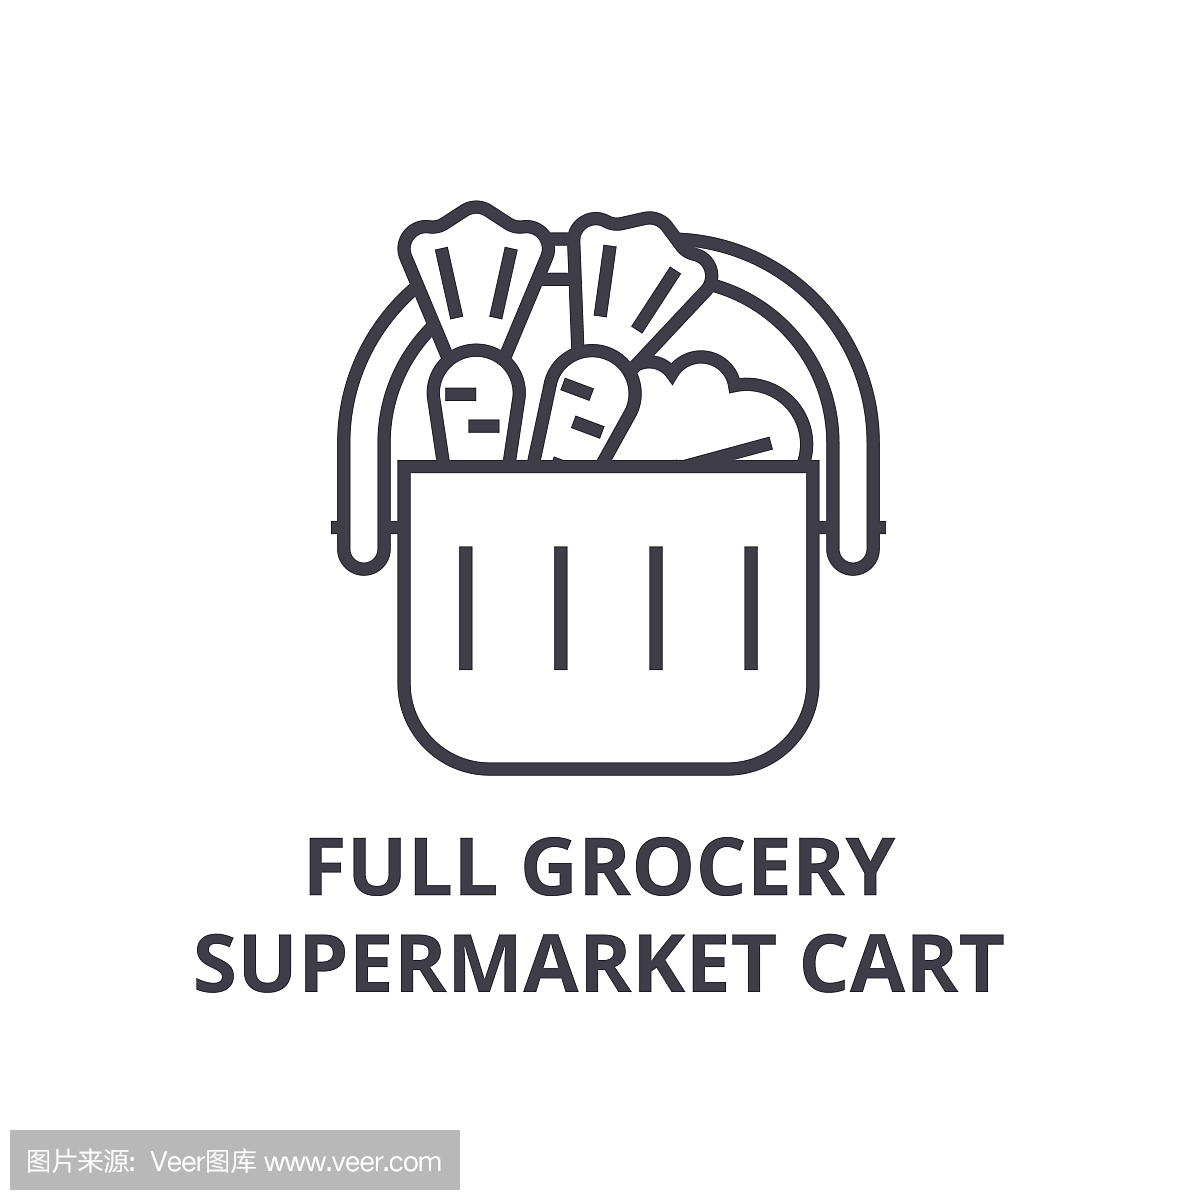 充分的杂货超市购物车线图标,轮廓标志,线性符